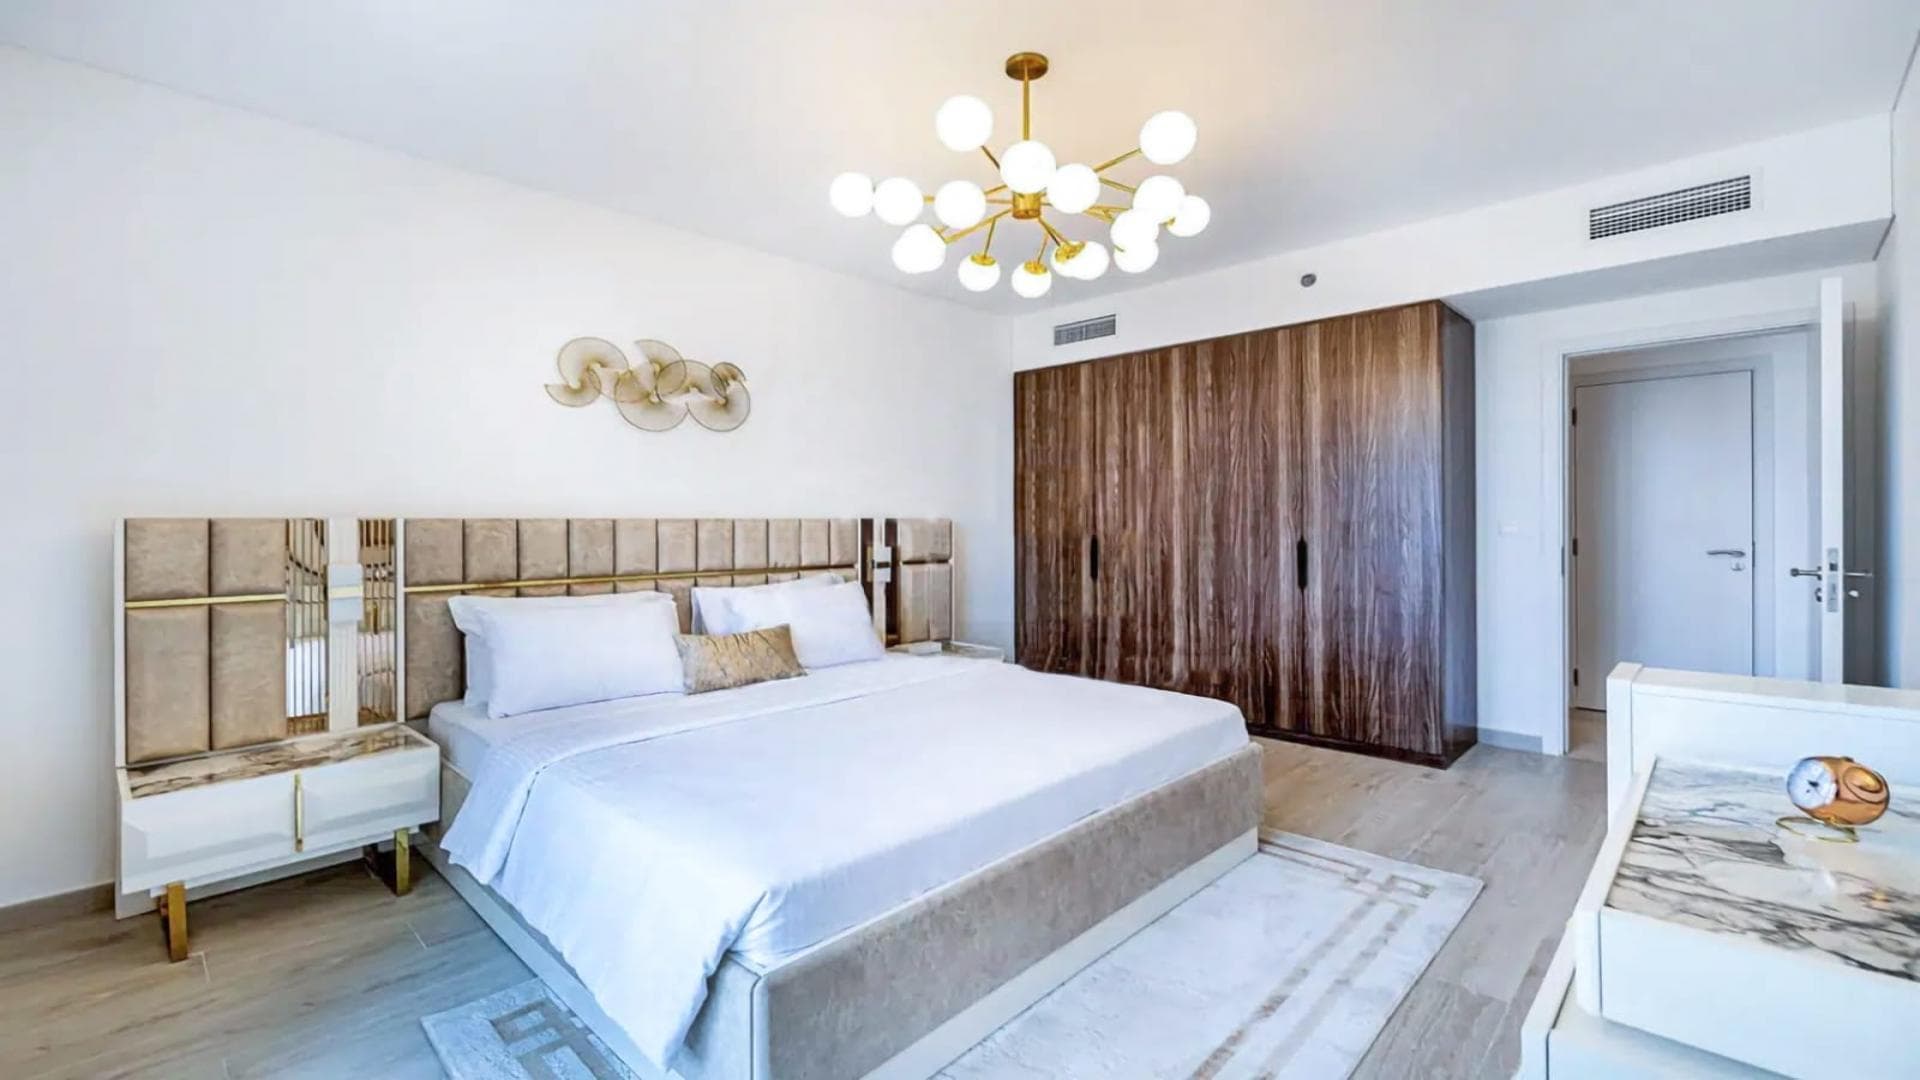 1 Bedroom Apartment For Rent Rahaal Lp36960 B28274c7a1ef080.jpeg